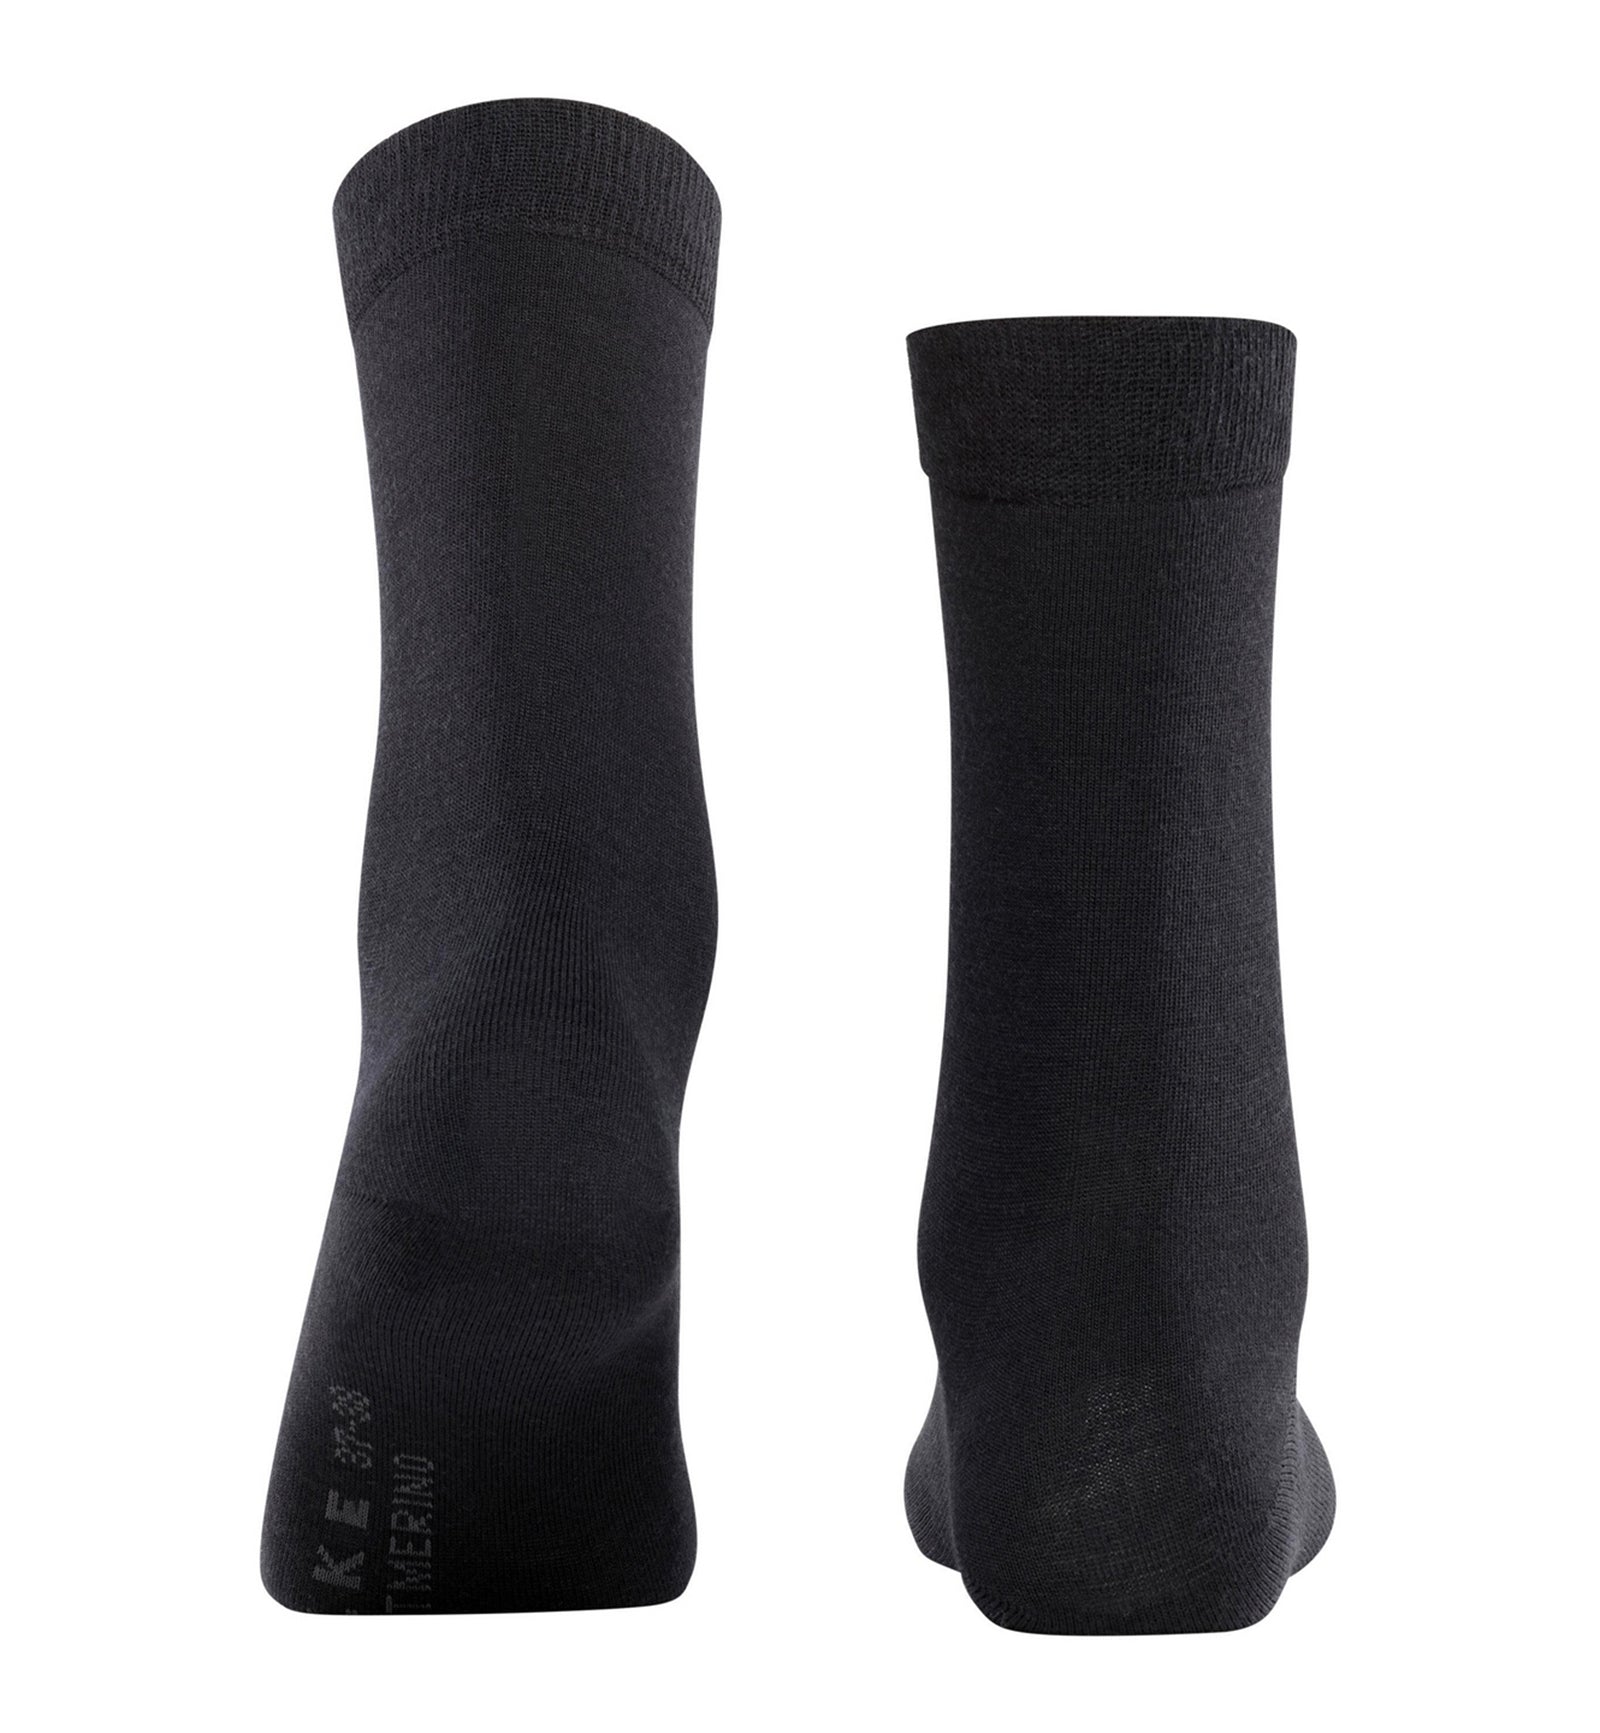 FALKE Softmerino Crew Socks (47488),6.5/7.5,Black - Black,6.5/7.5